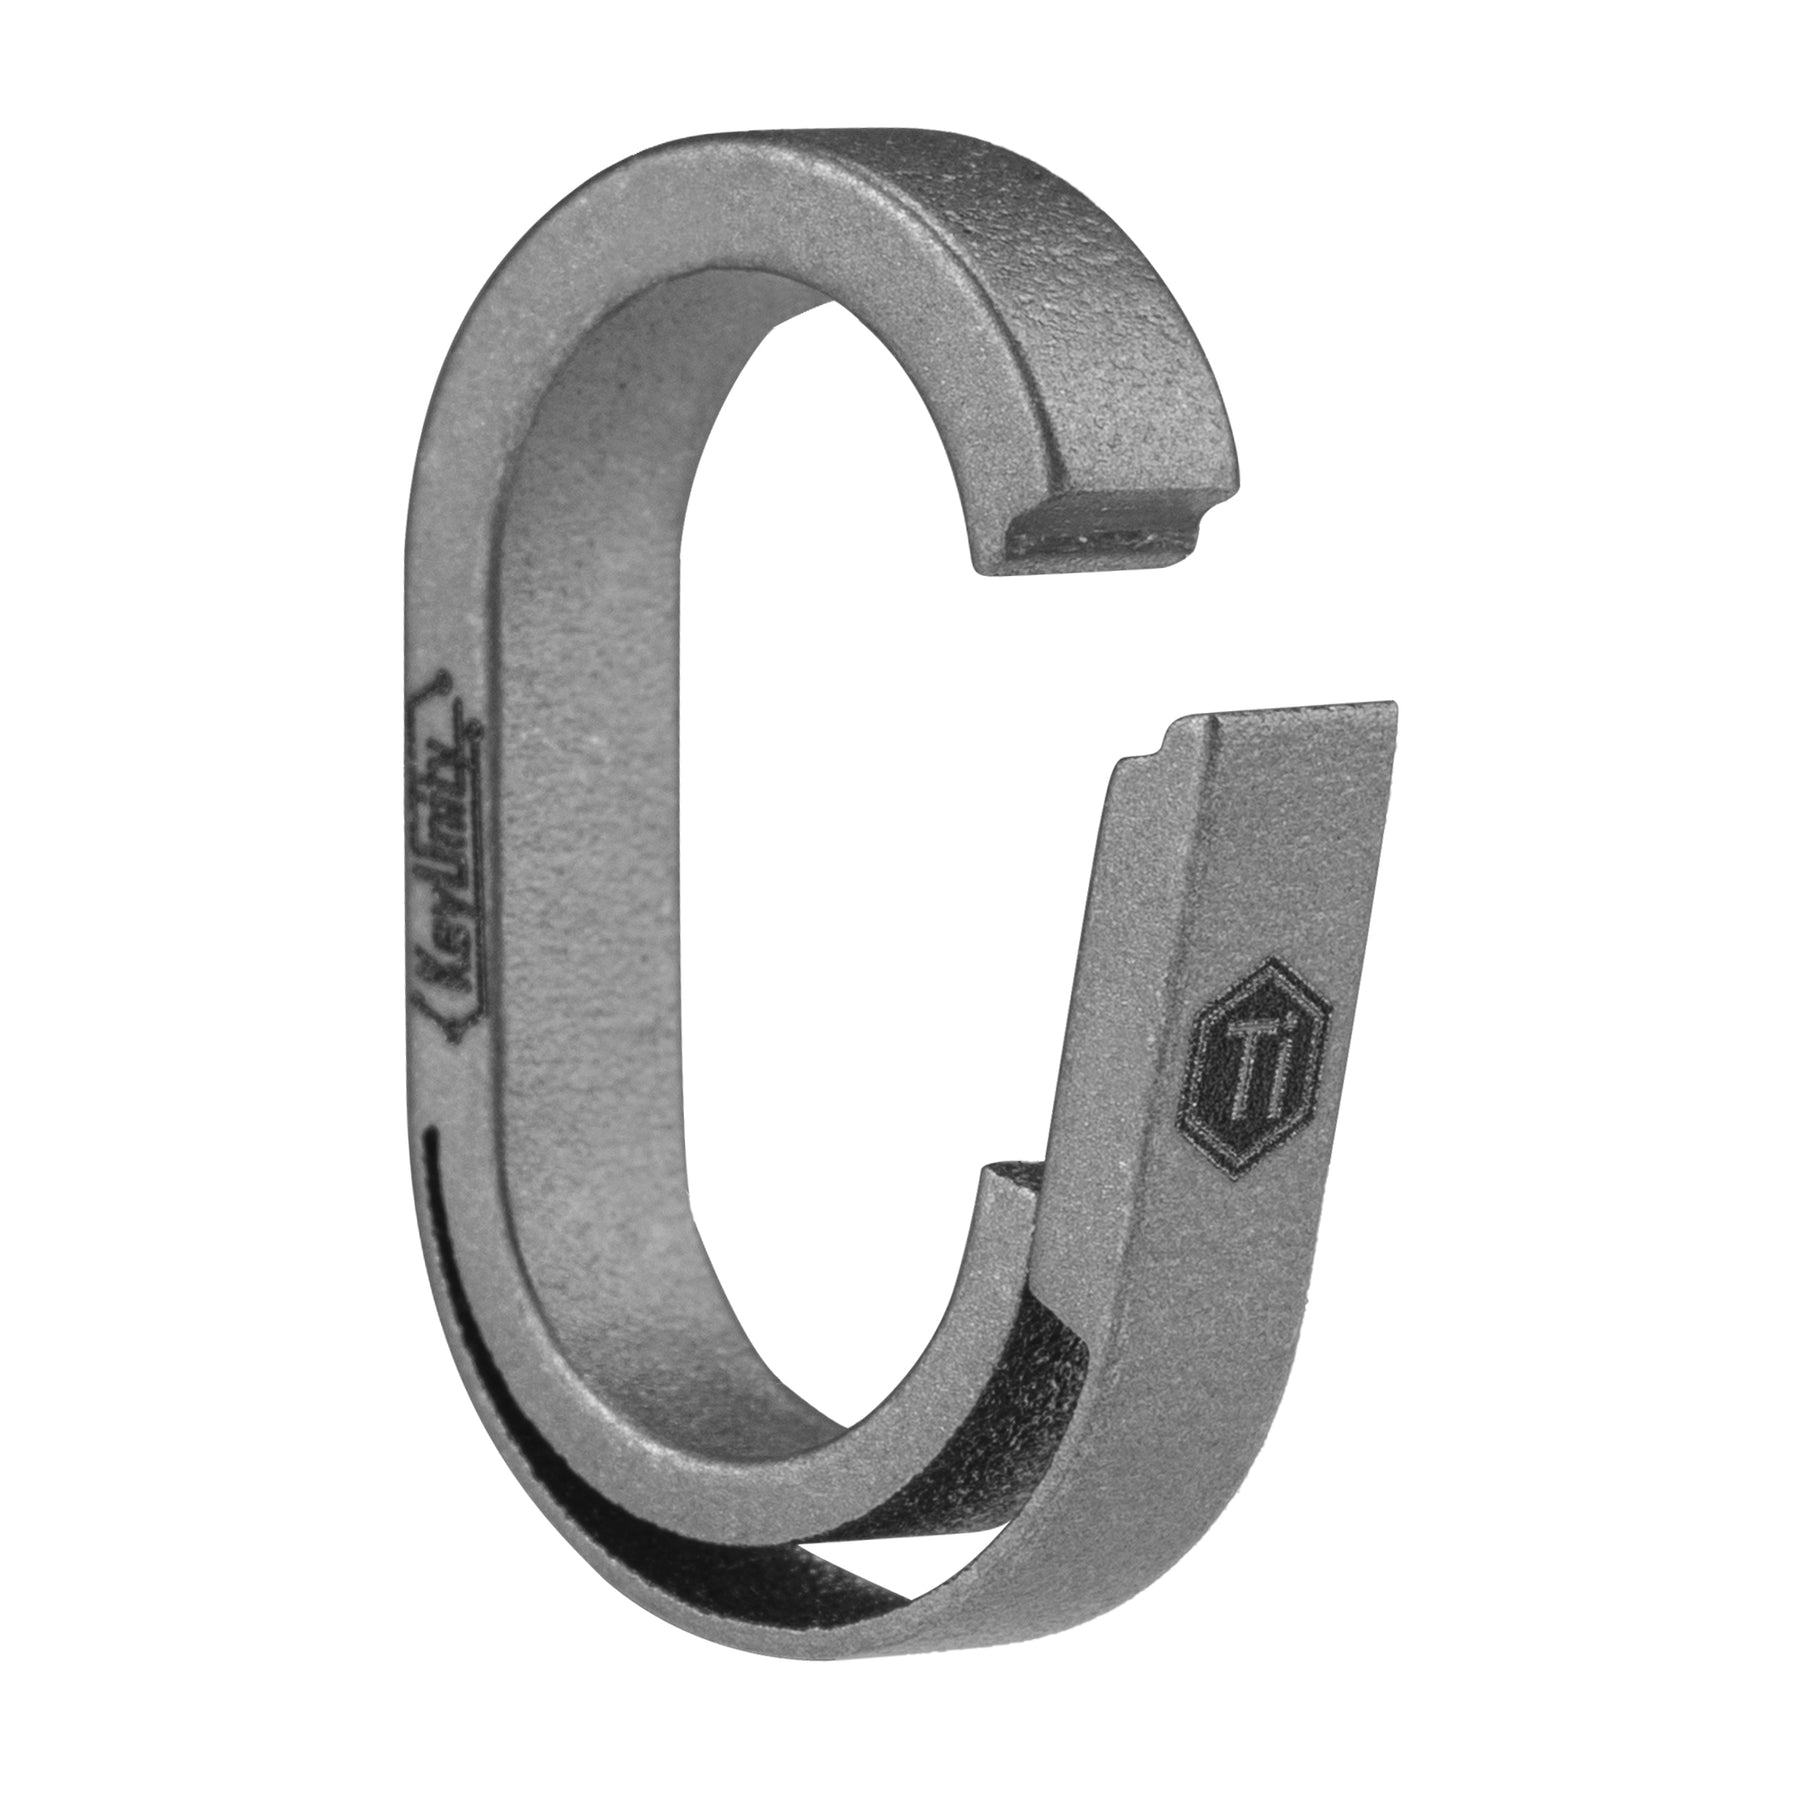 KA30 Titanium Key Ring